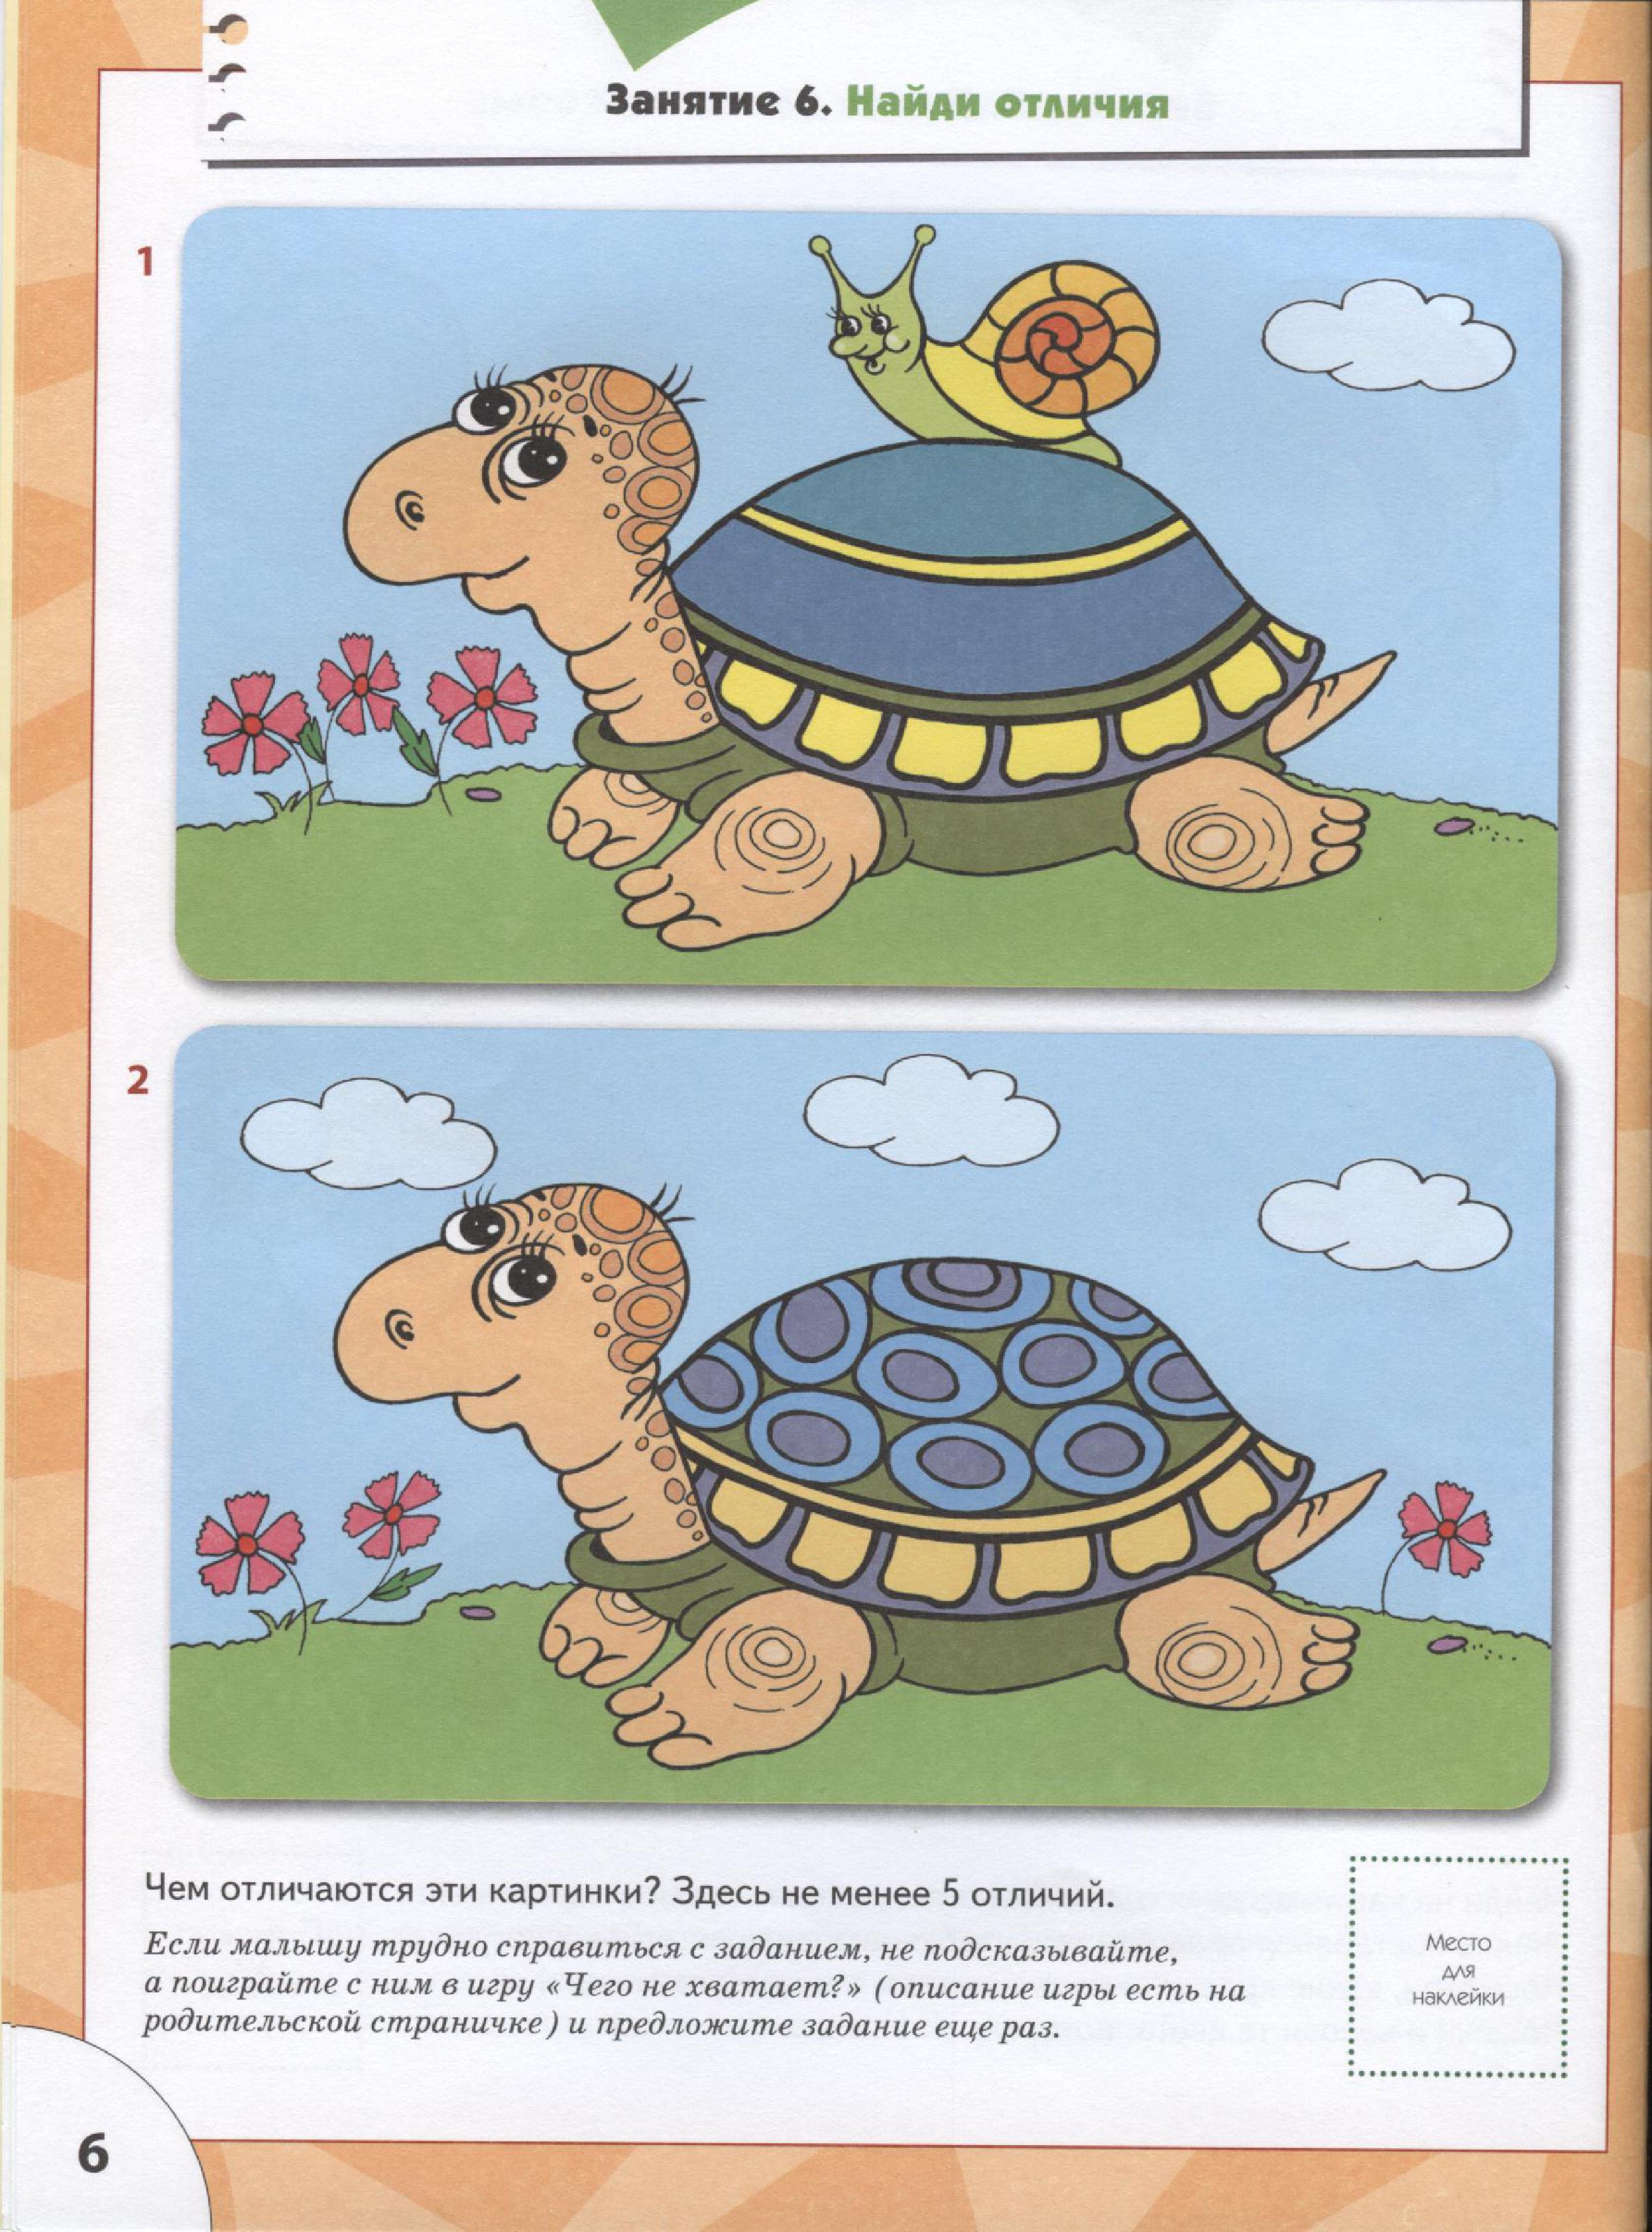 Логике игры 4 года. Задания с черепахами для дошкольников. Развивающие занятия для малышей. Занятия для детей 3 лет для развития. Обучающие задания для детей 3-4 лет.